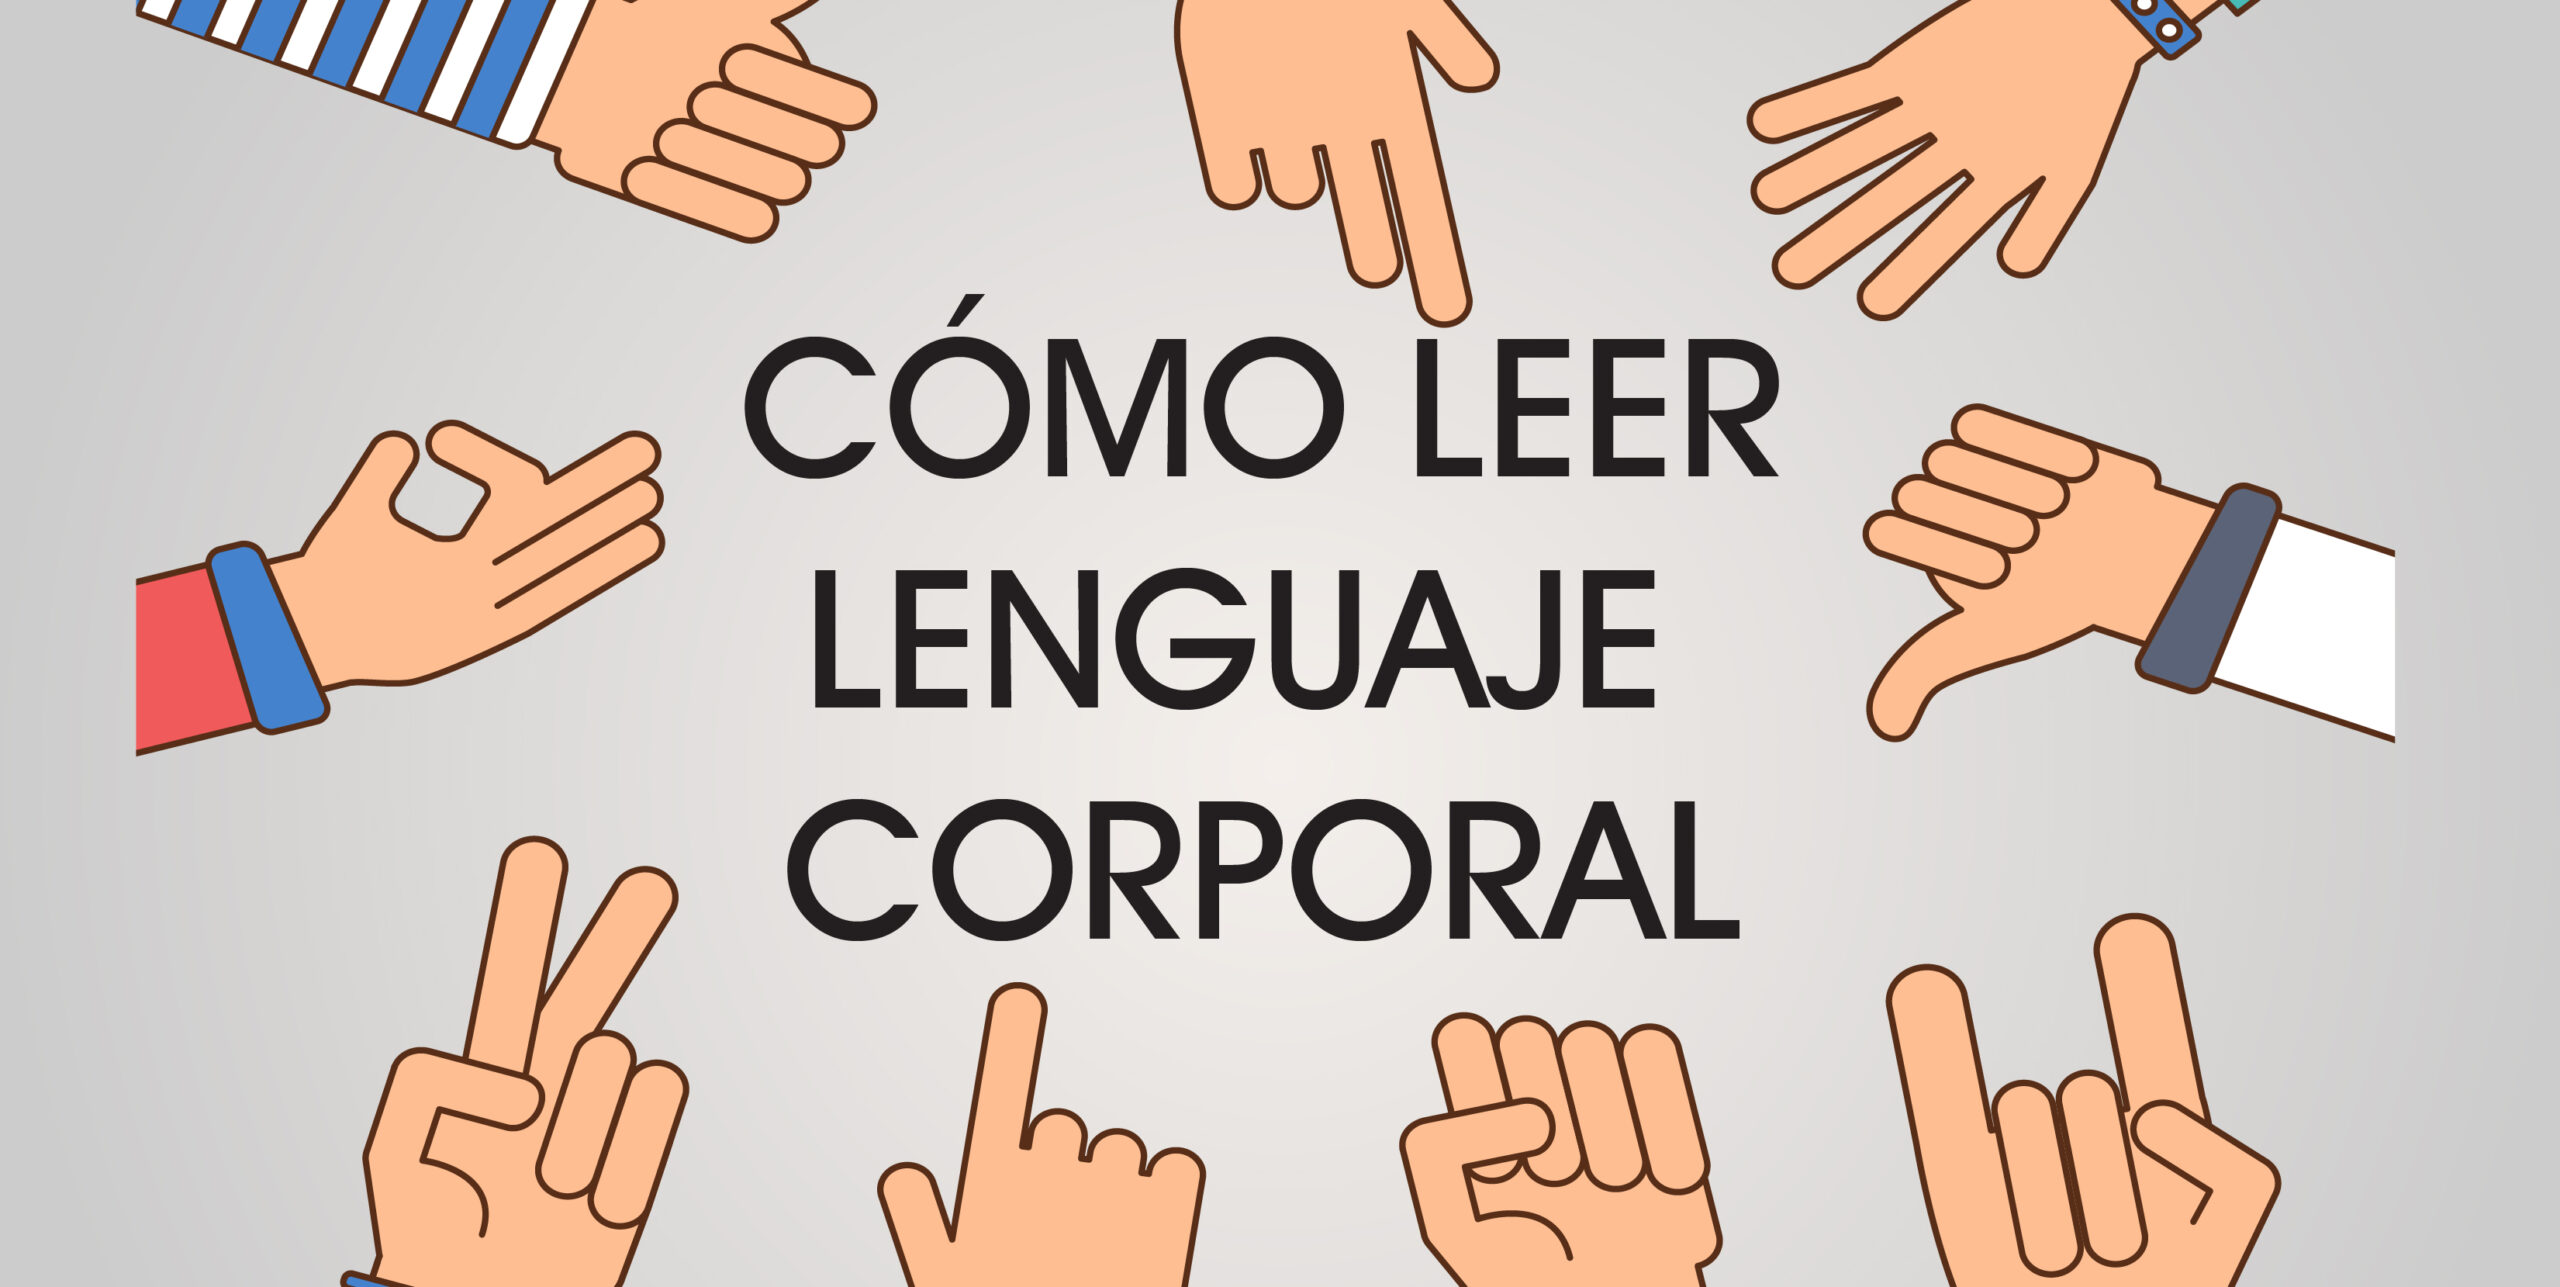 Cómo leer Lenguaje Corporal • Habilidad social para leer a las personas y mejorar tu comunicación